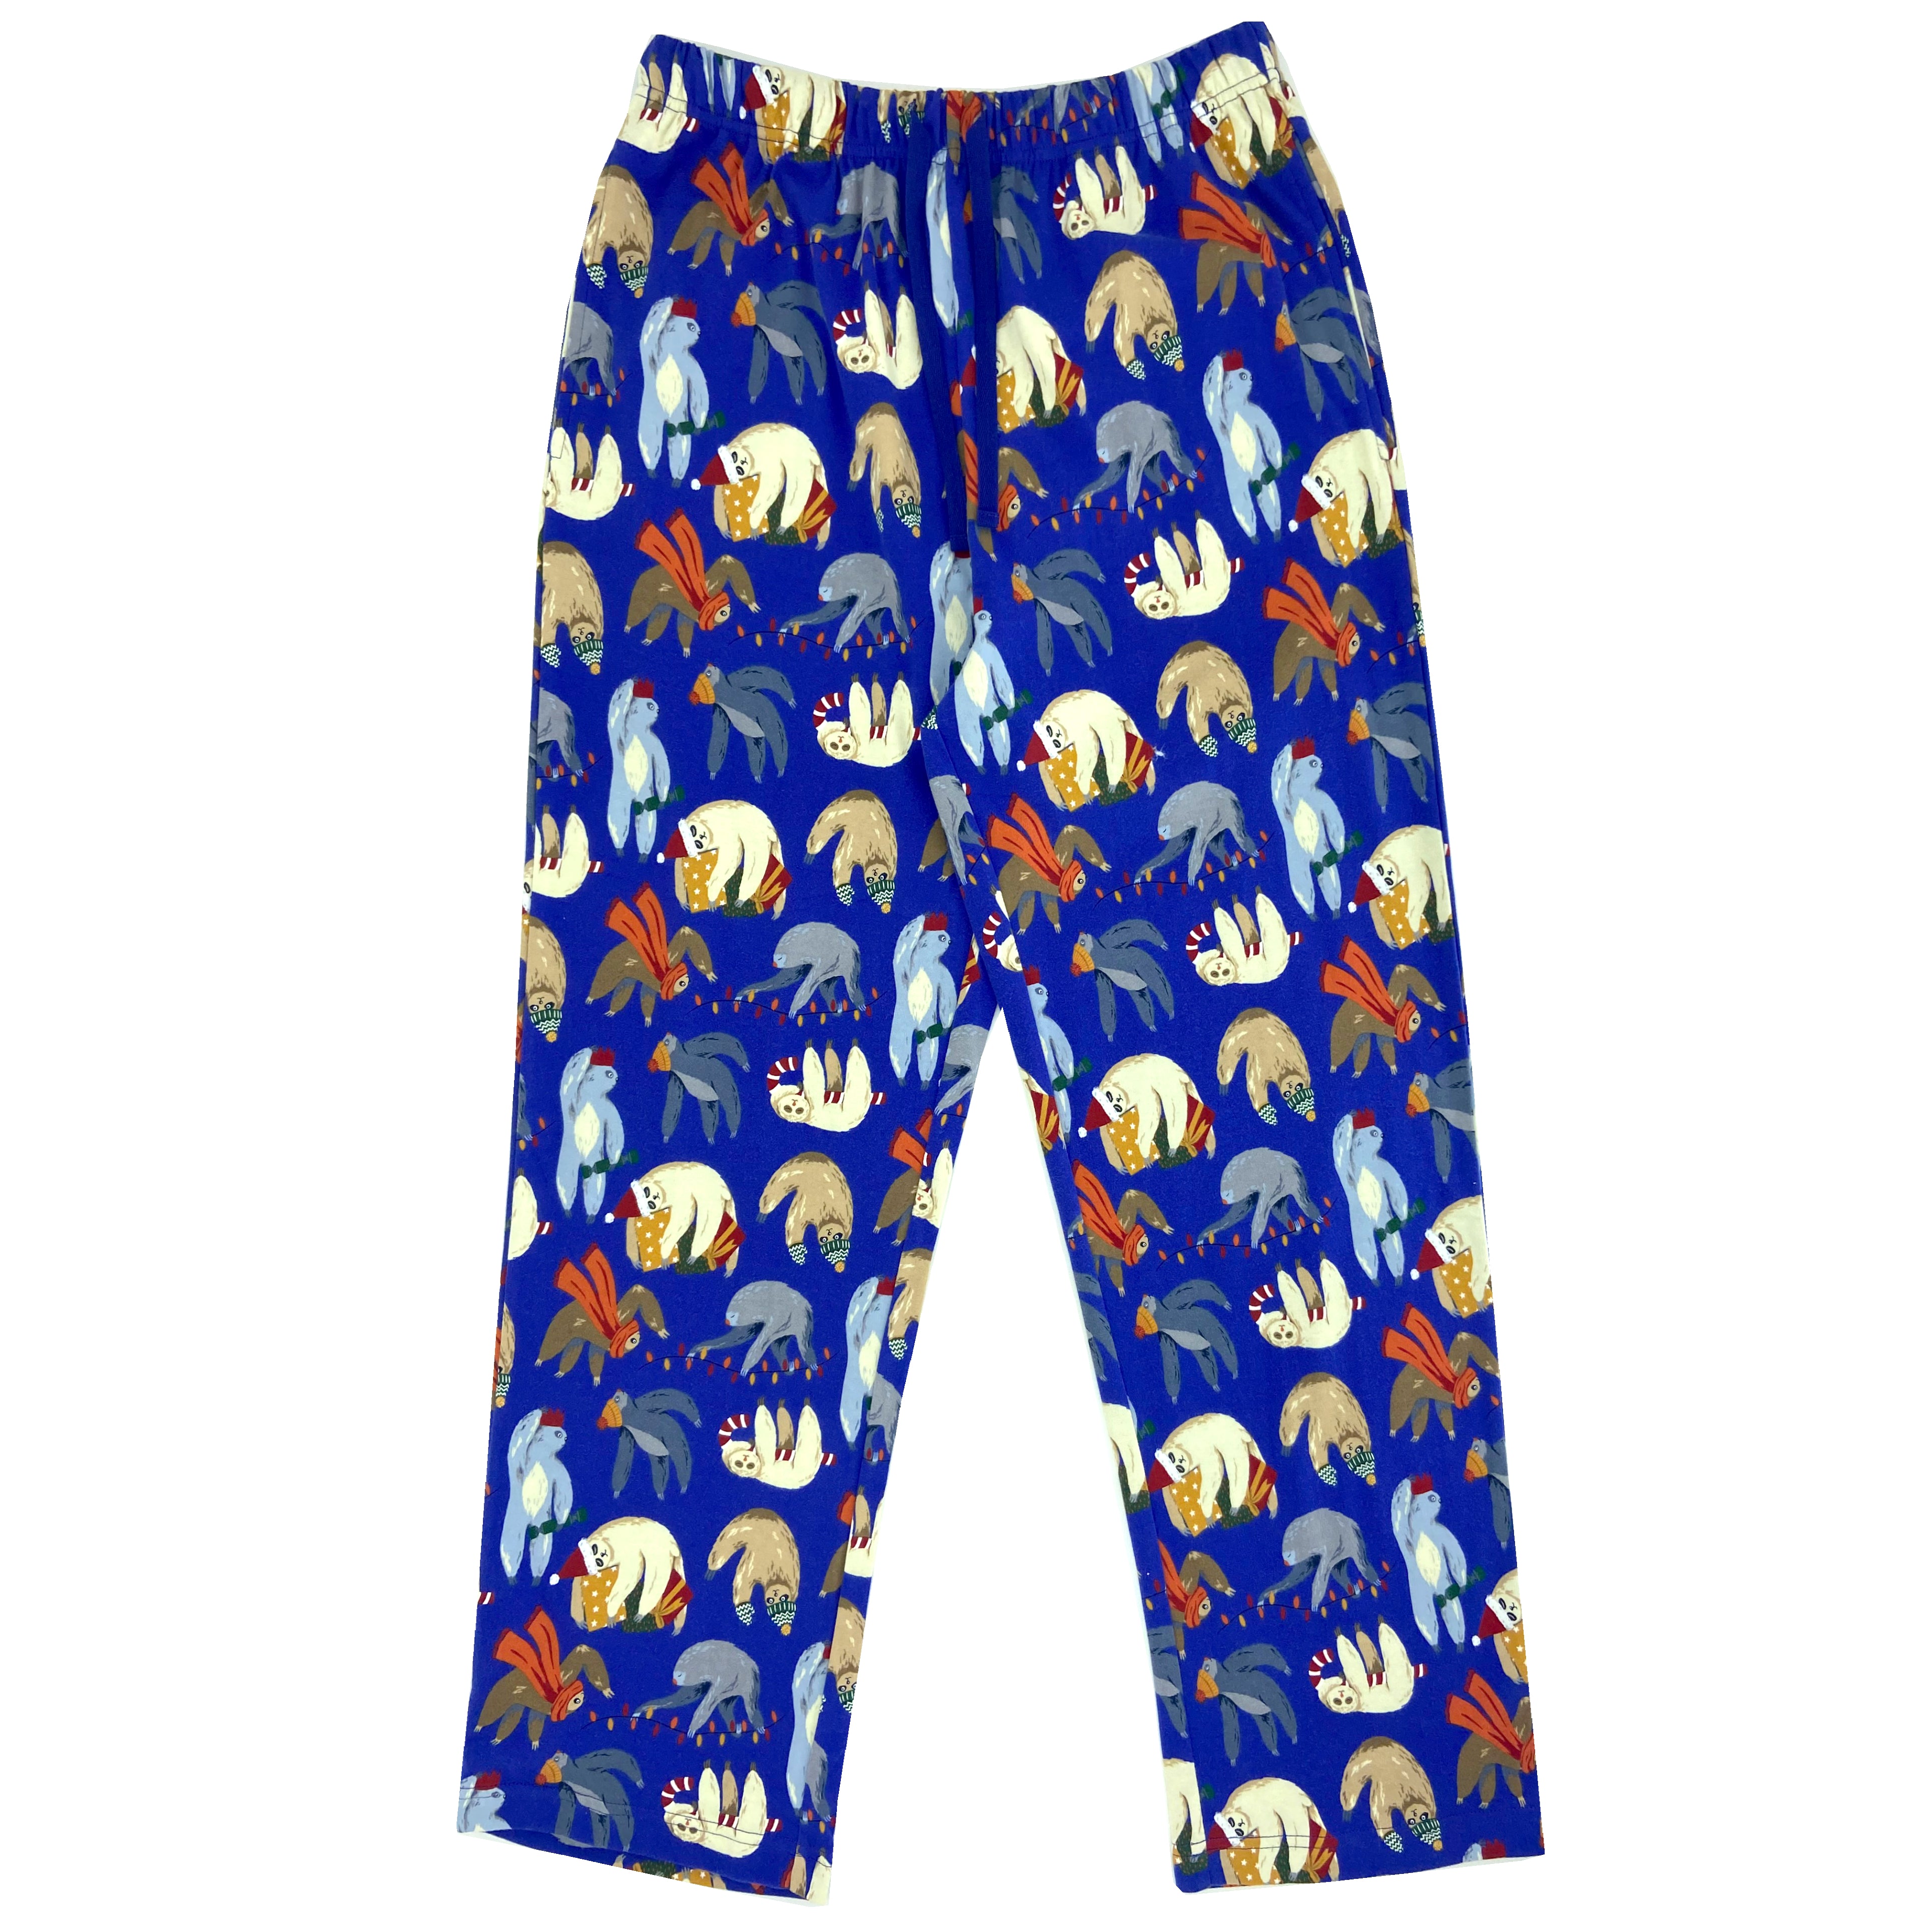 Super Soft Sleepy Christmas Sloth Print Long Cotton Knit Pajama Pants